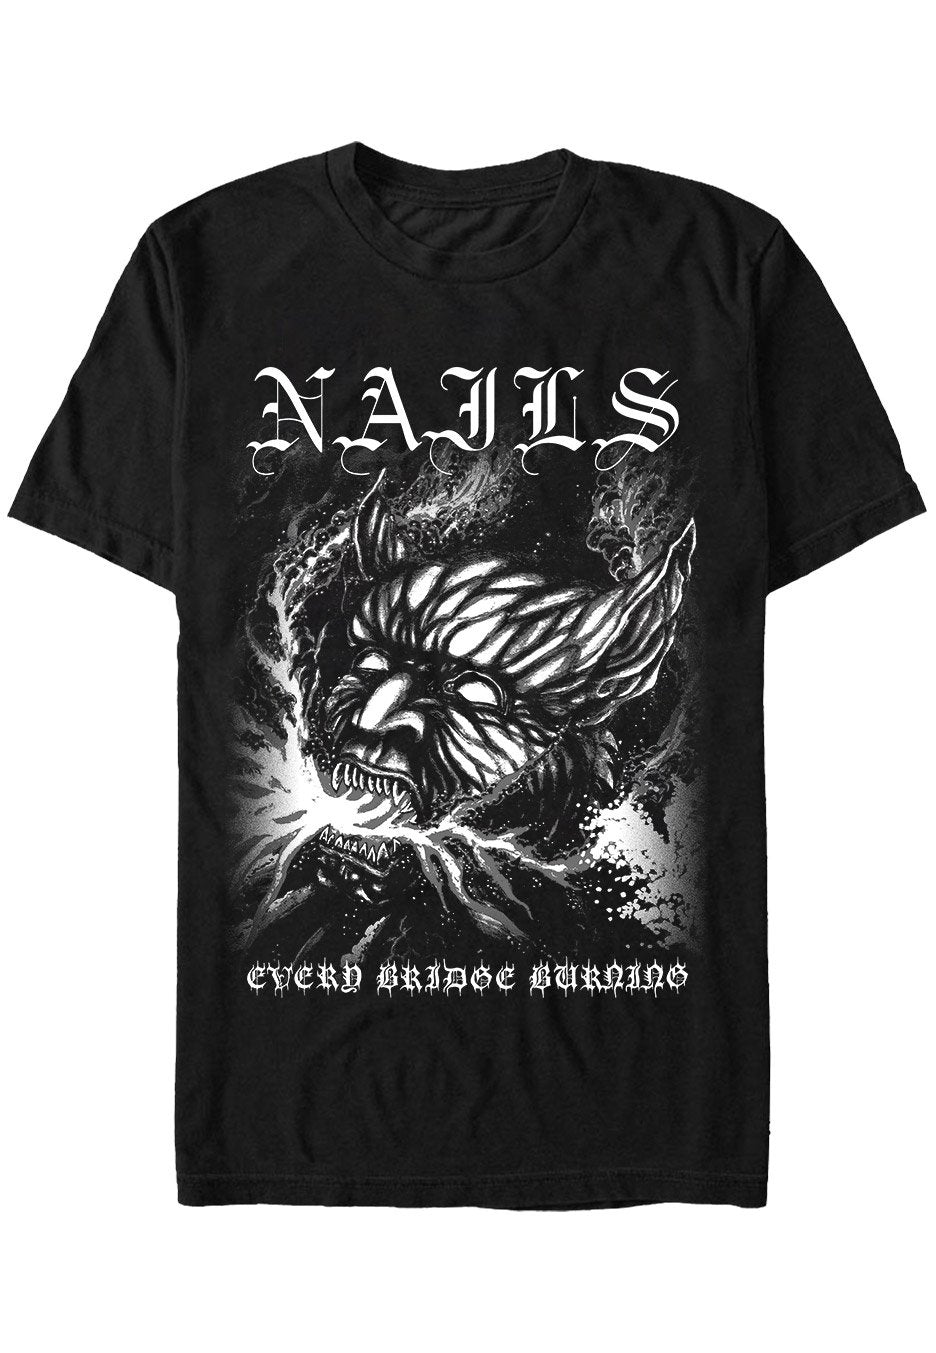 Nails - Every Bridge Burning - T-Shirt | Neutral-Image